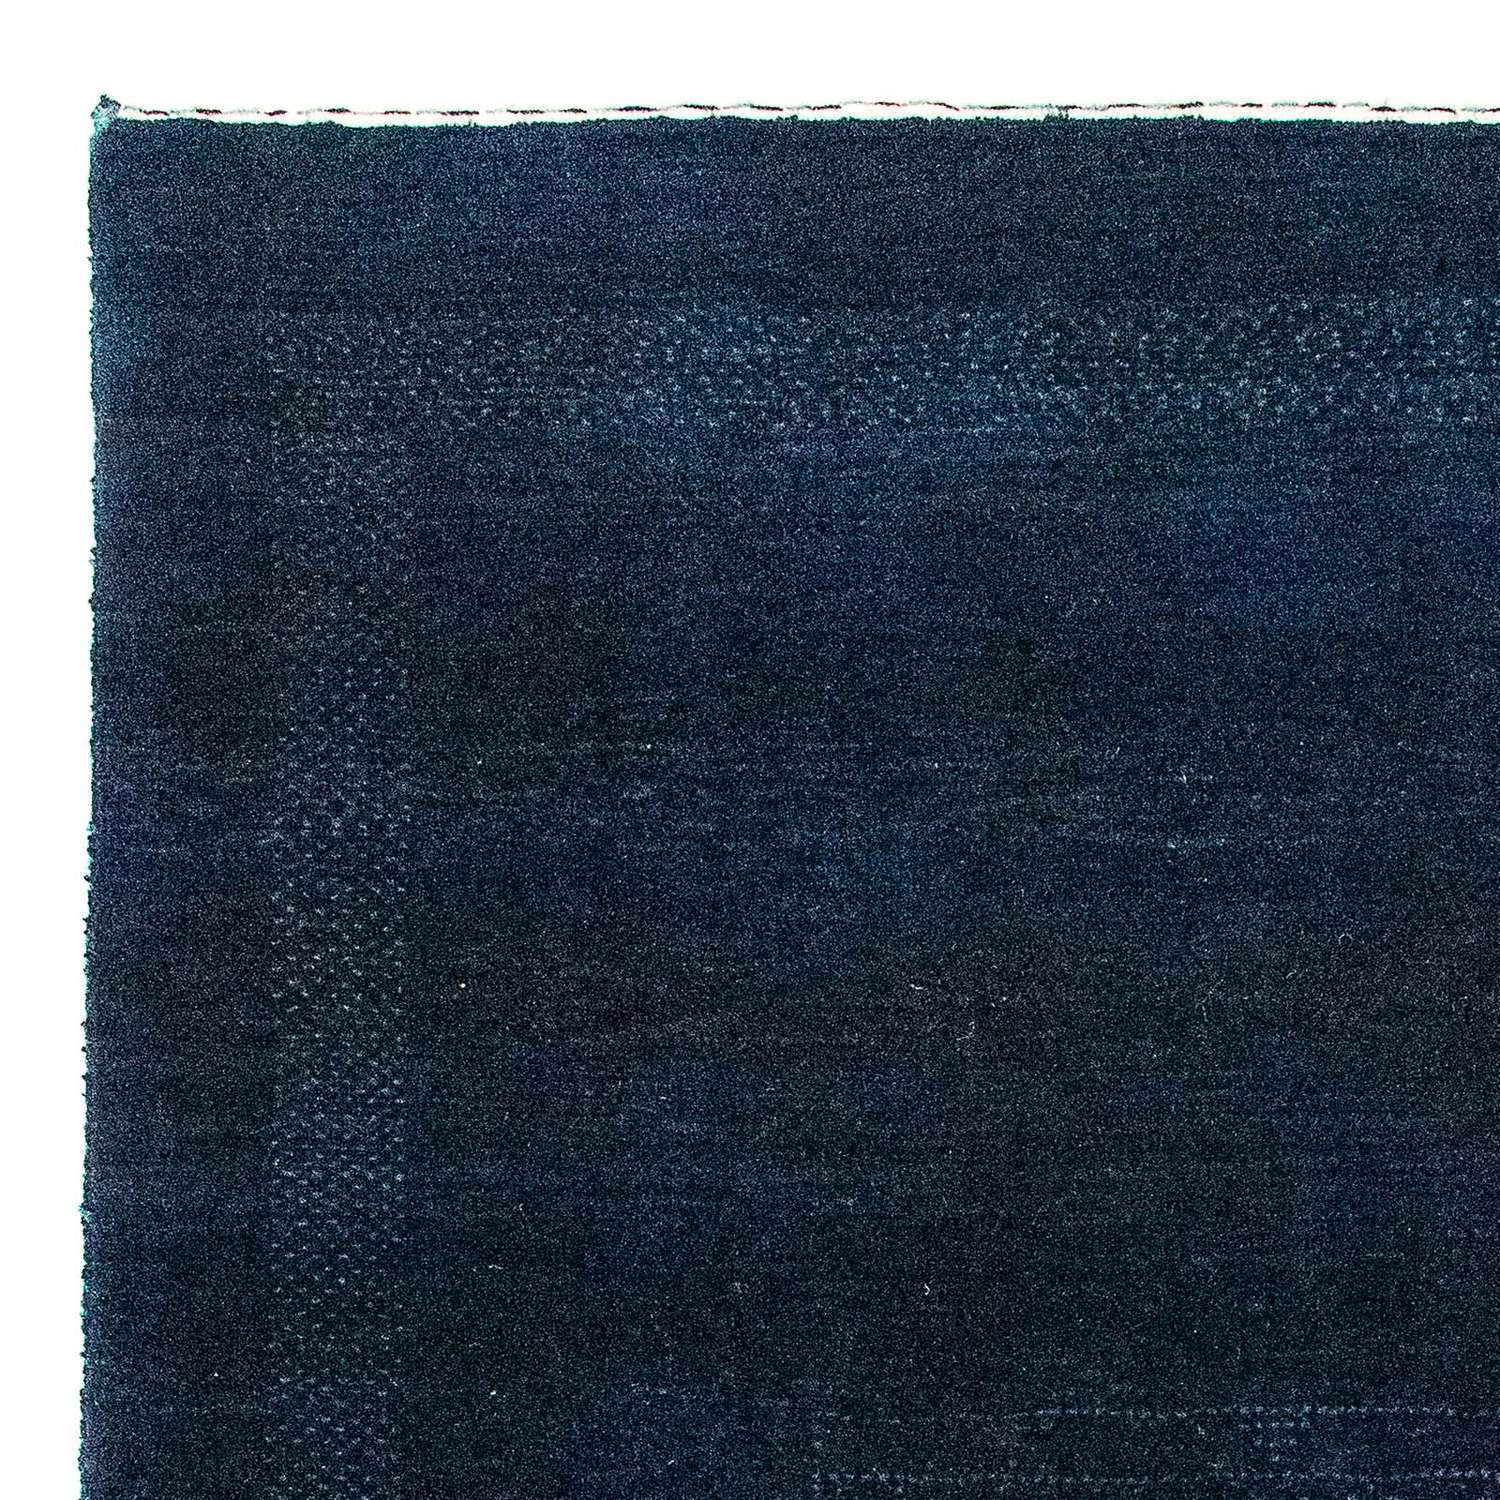 Ziegler Rug - 132 x 75 cm - dark blue